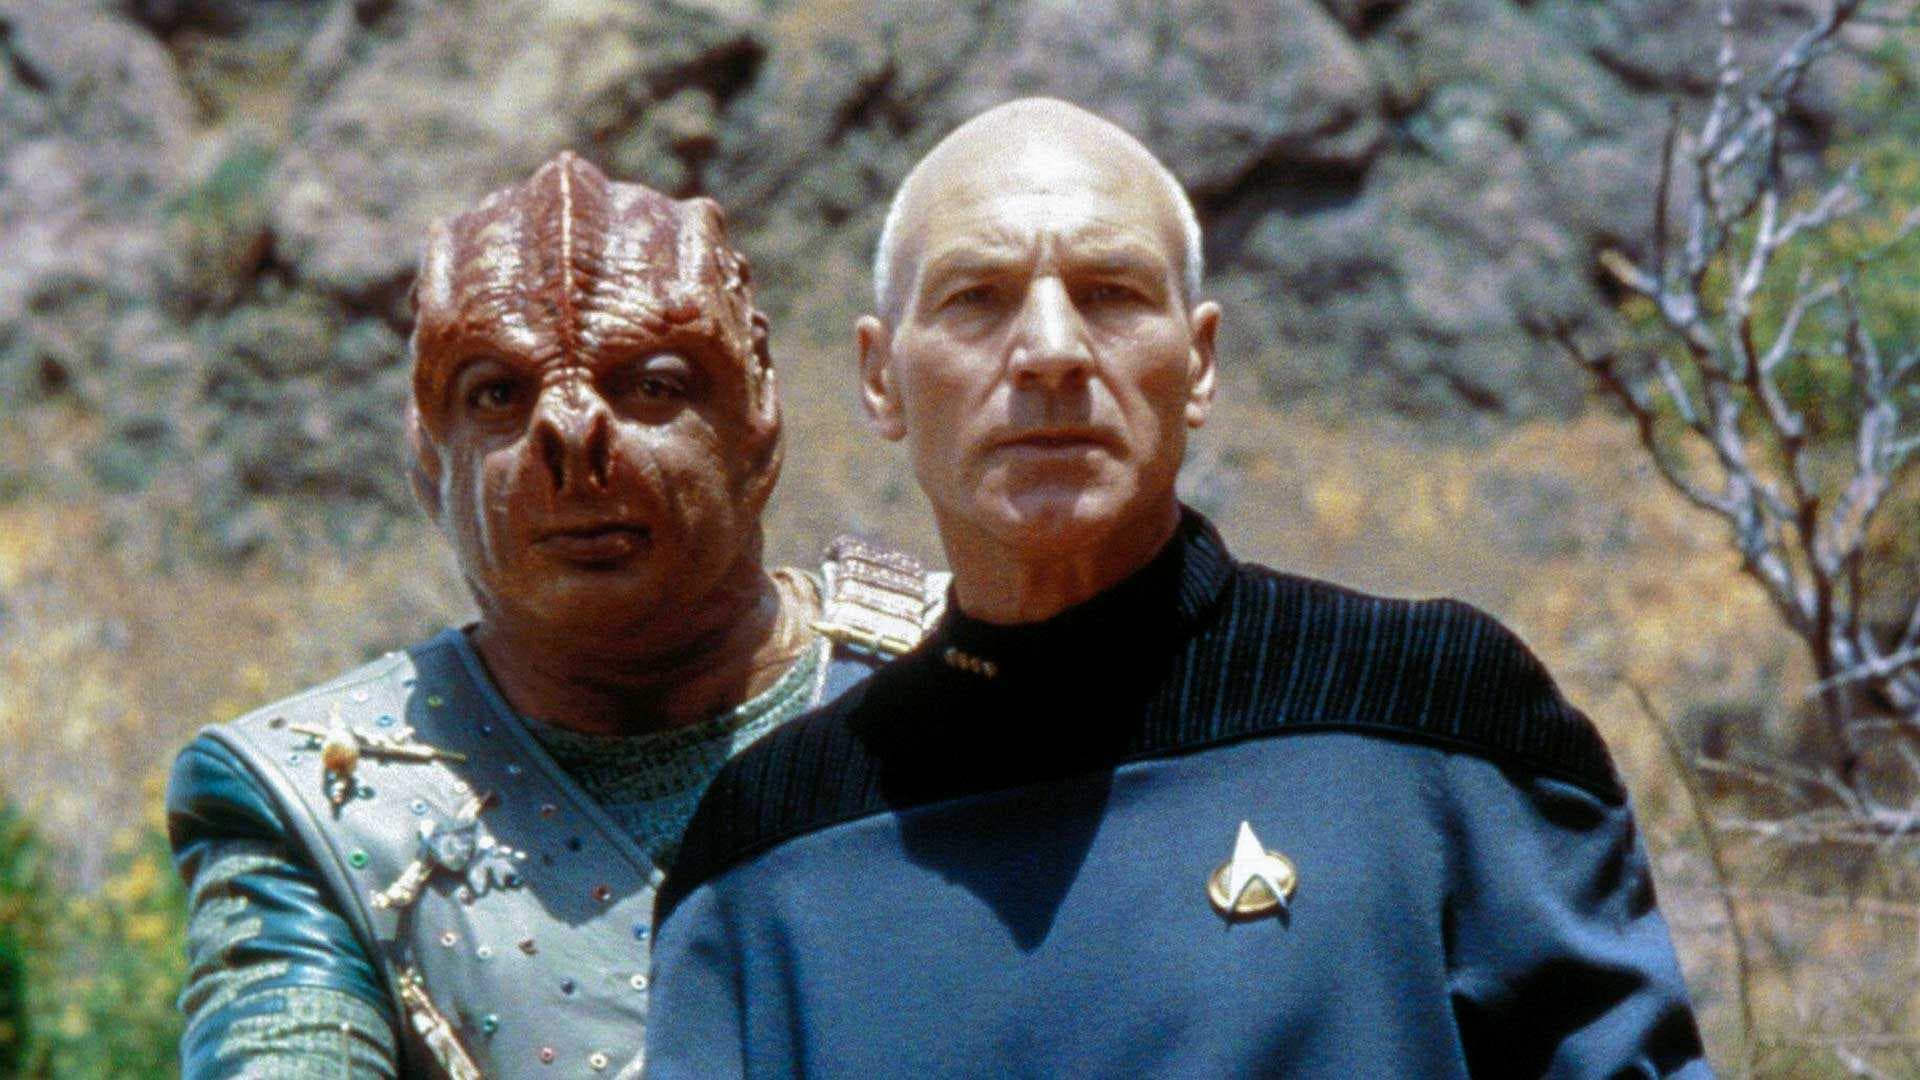 Winfield and Stewart in "Star Trek: The Next Generation"